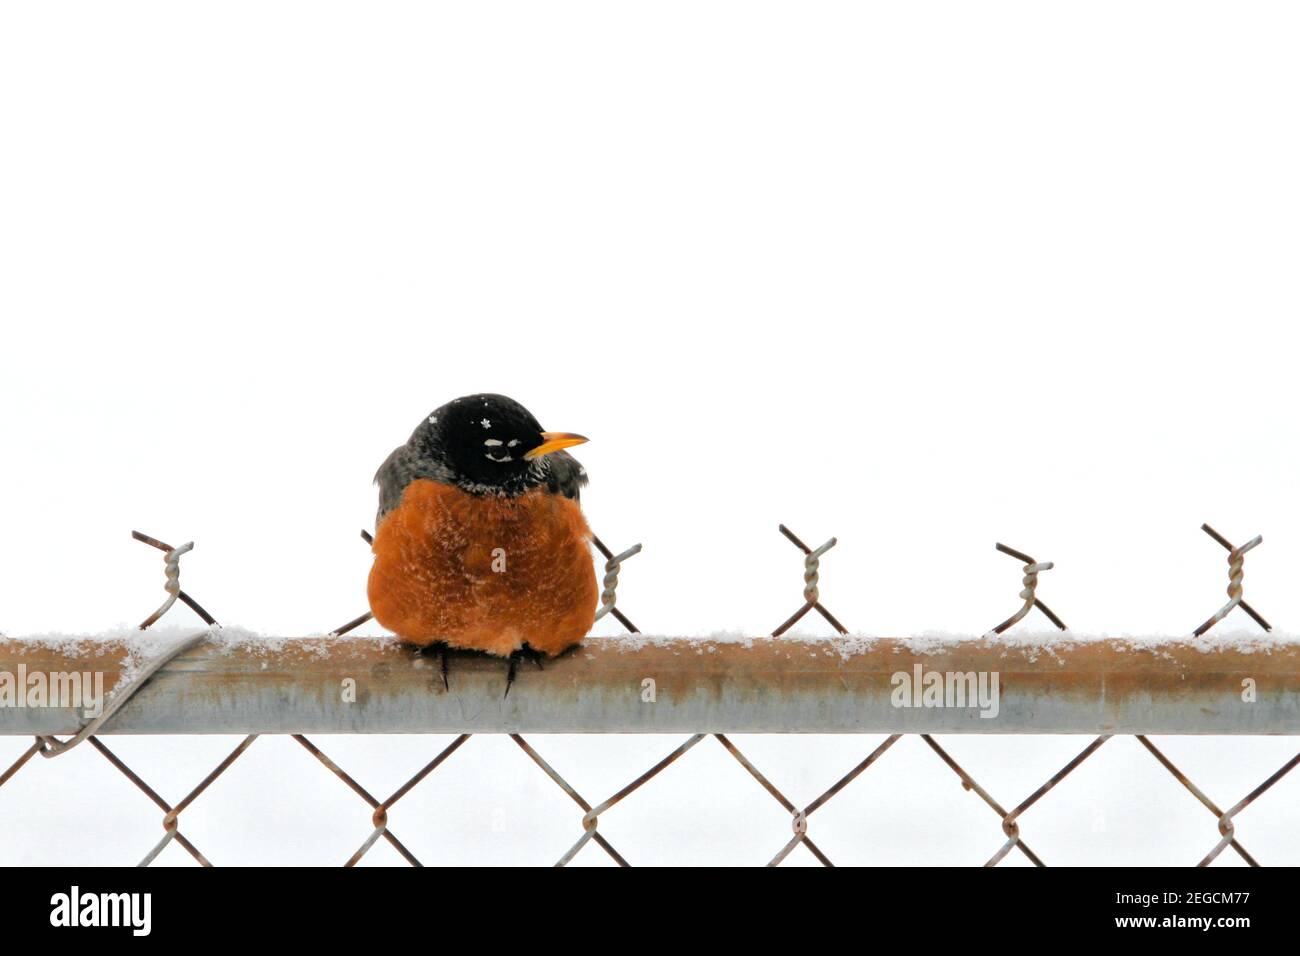 Un Robin americano di razza arancio si trova su una recinzione a catena con uno sfondo di neve bianca durante una brutale tempesta invernale dell'Oklahoma. Foto Stock